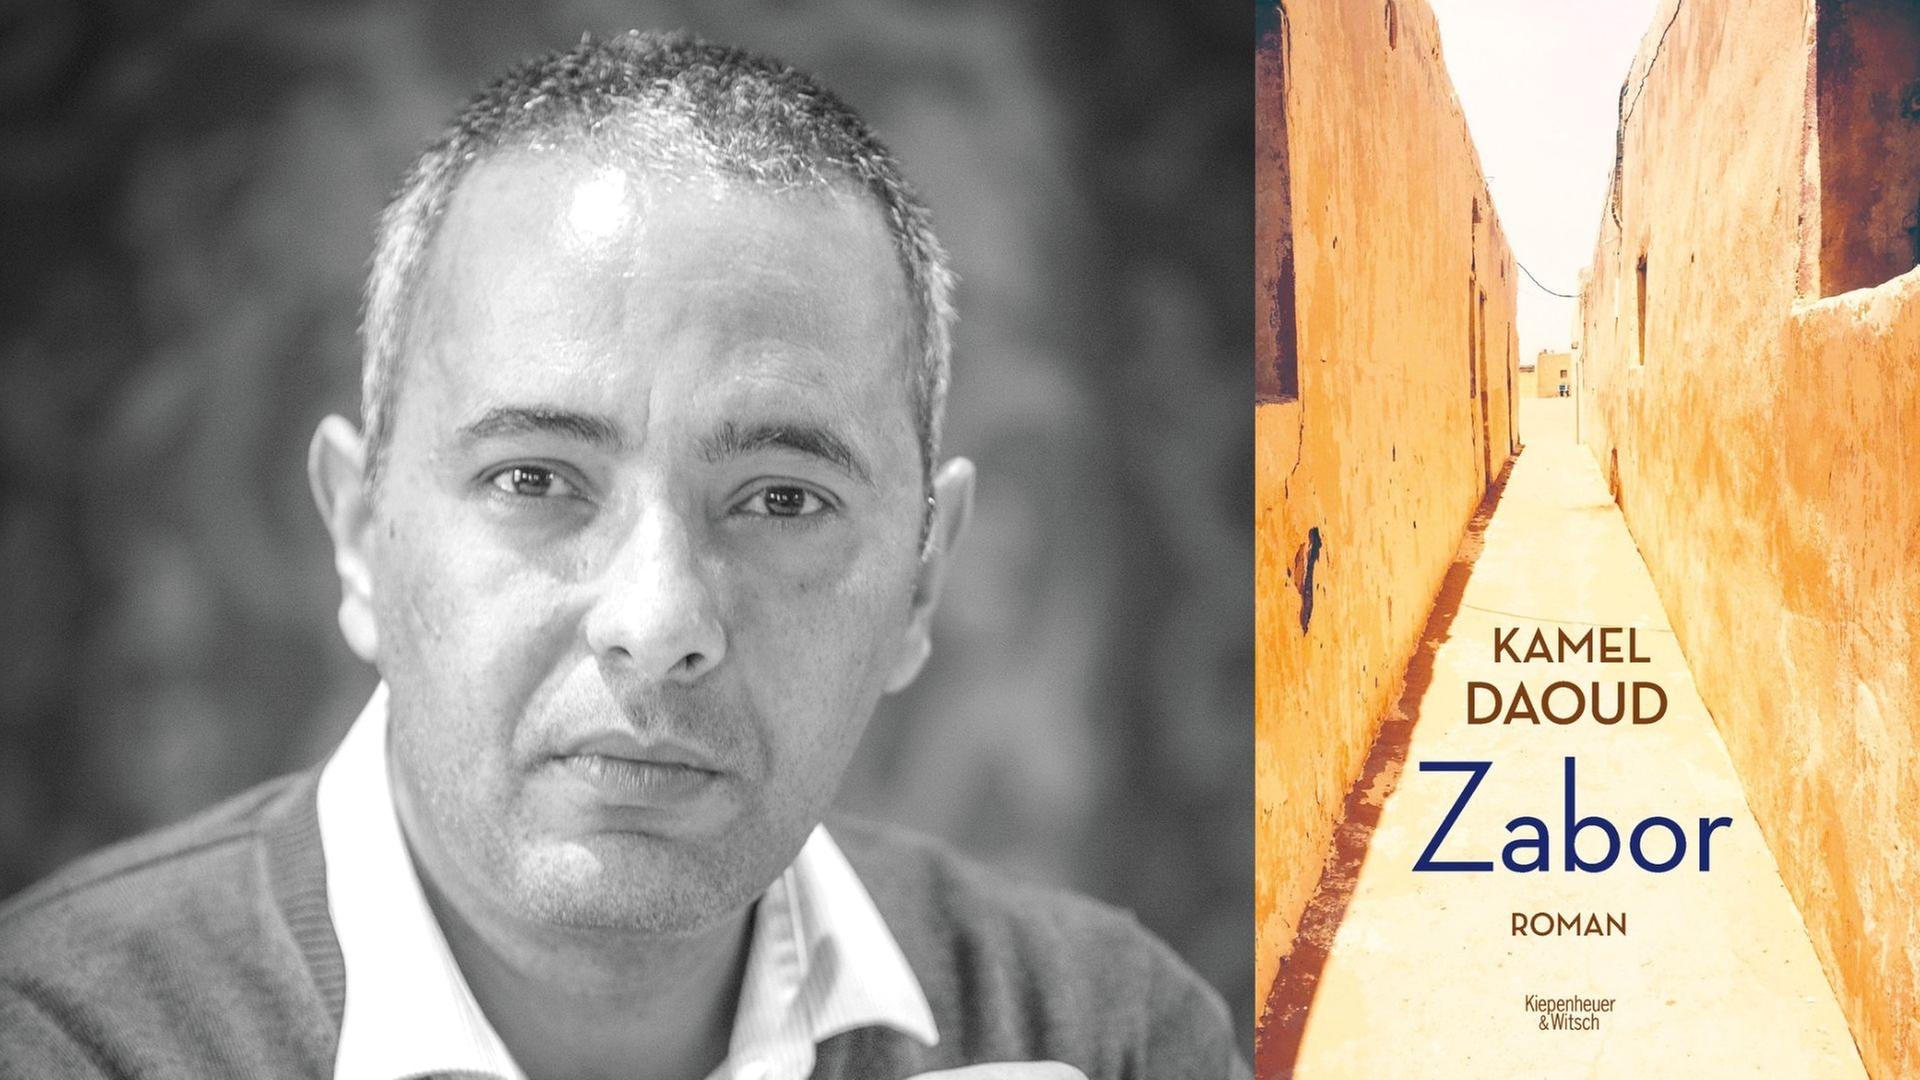 Zu sehen ist der Autor Kamel Daoud und das Cover seines Romans "Zabor".